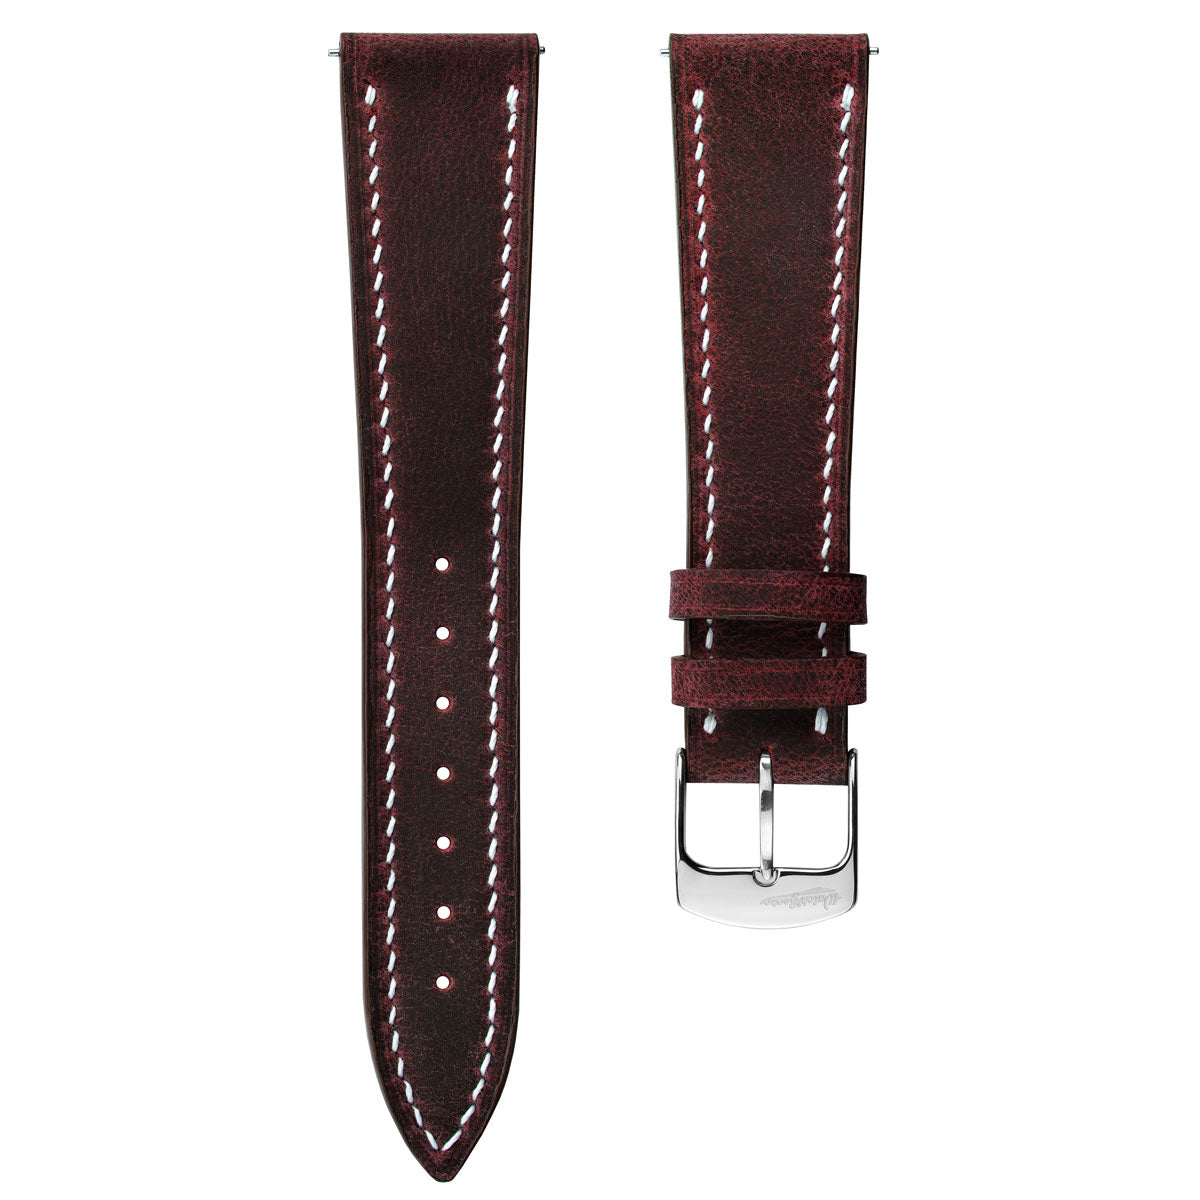 Hanley Crazy Horse Leather Watch Strap - Bordeaux